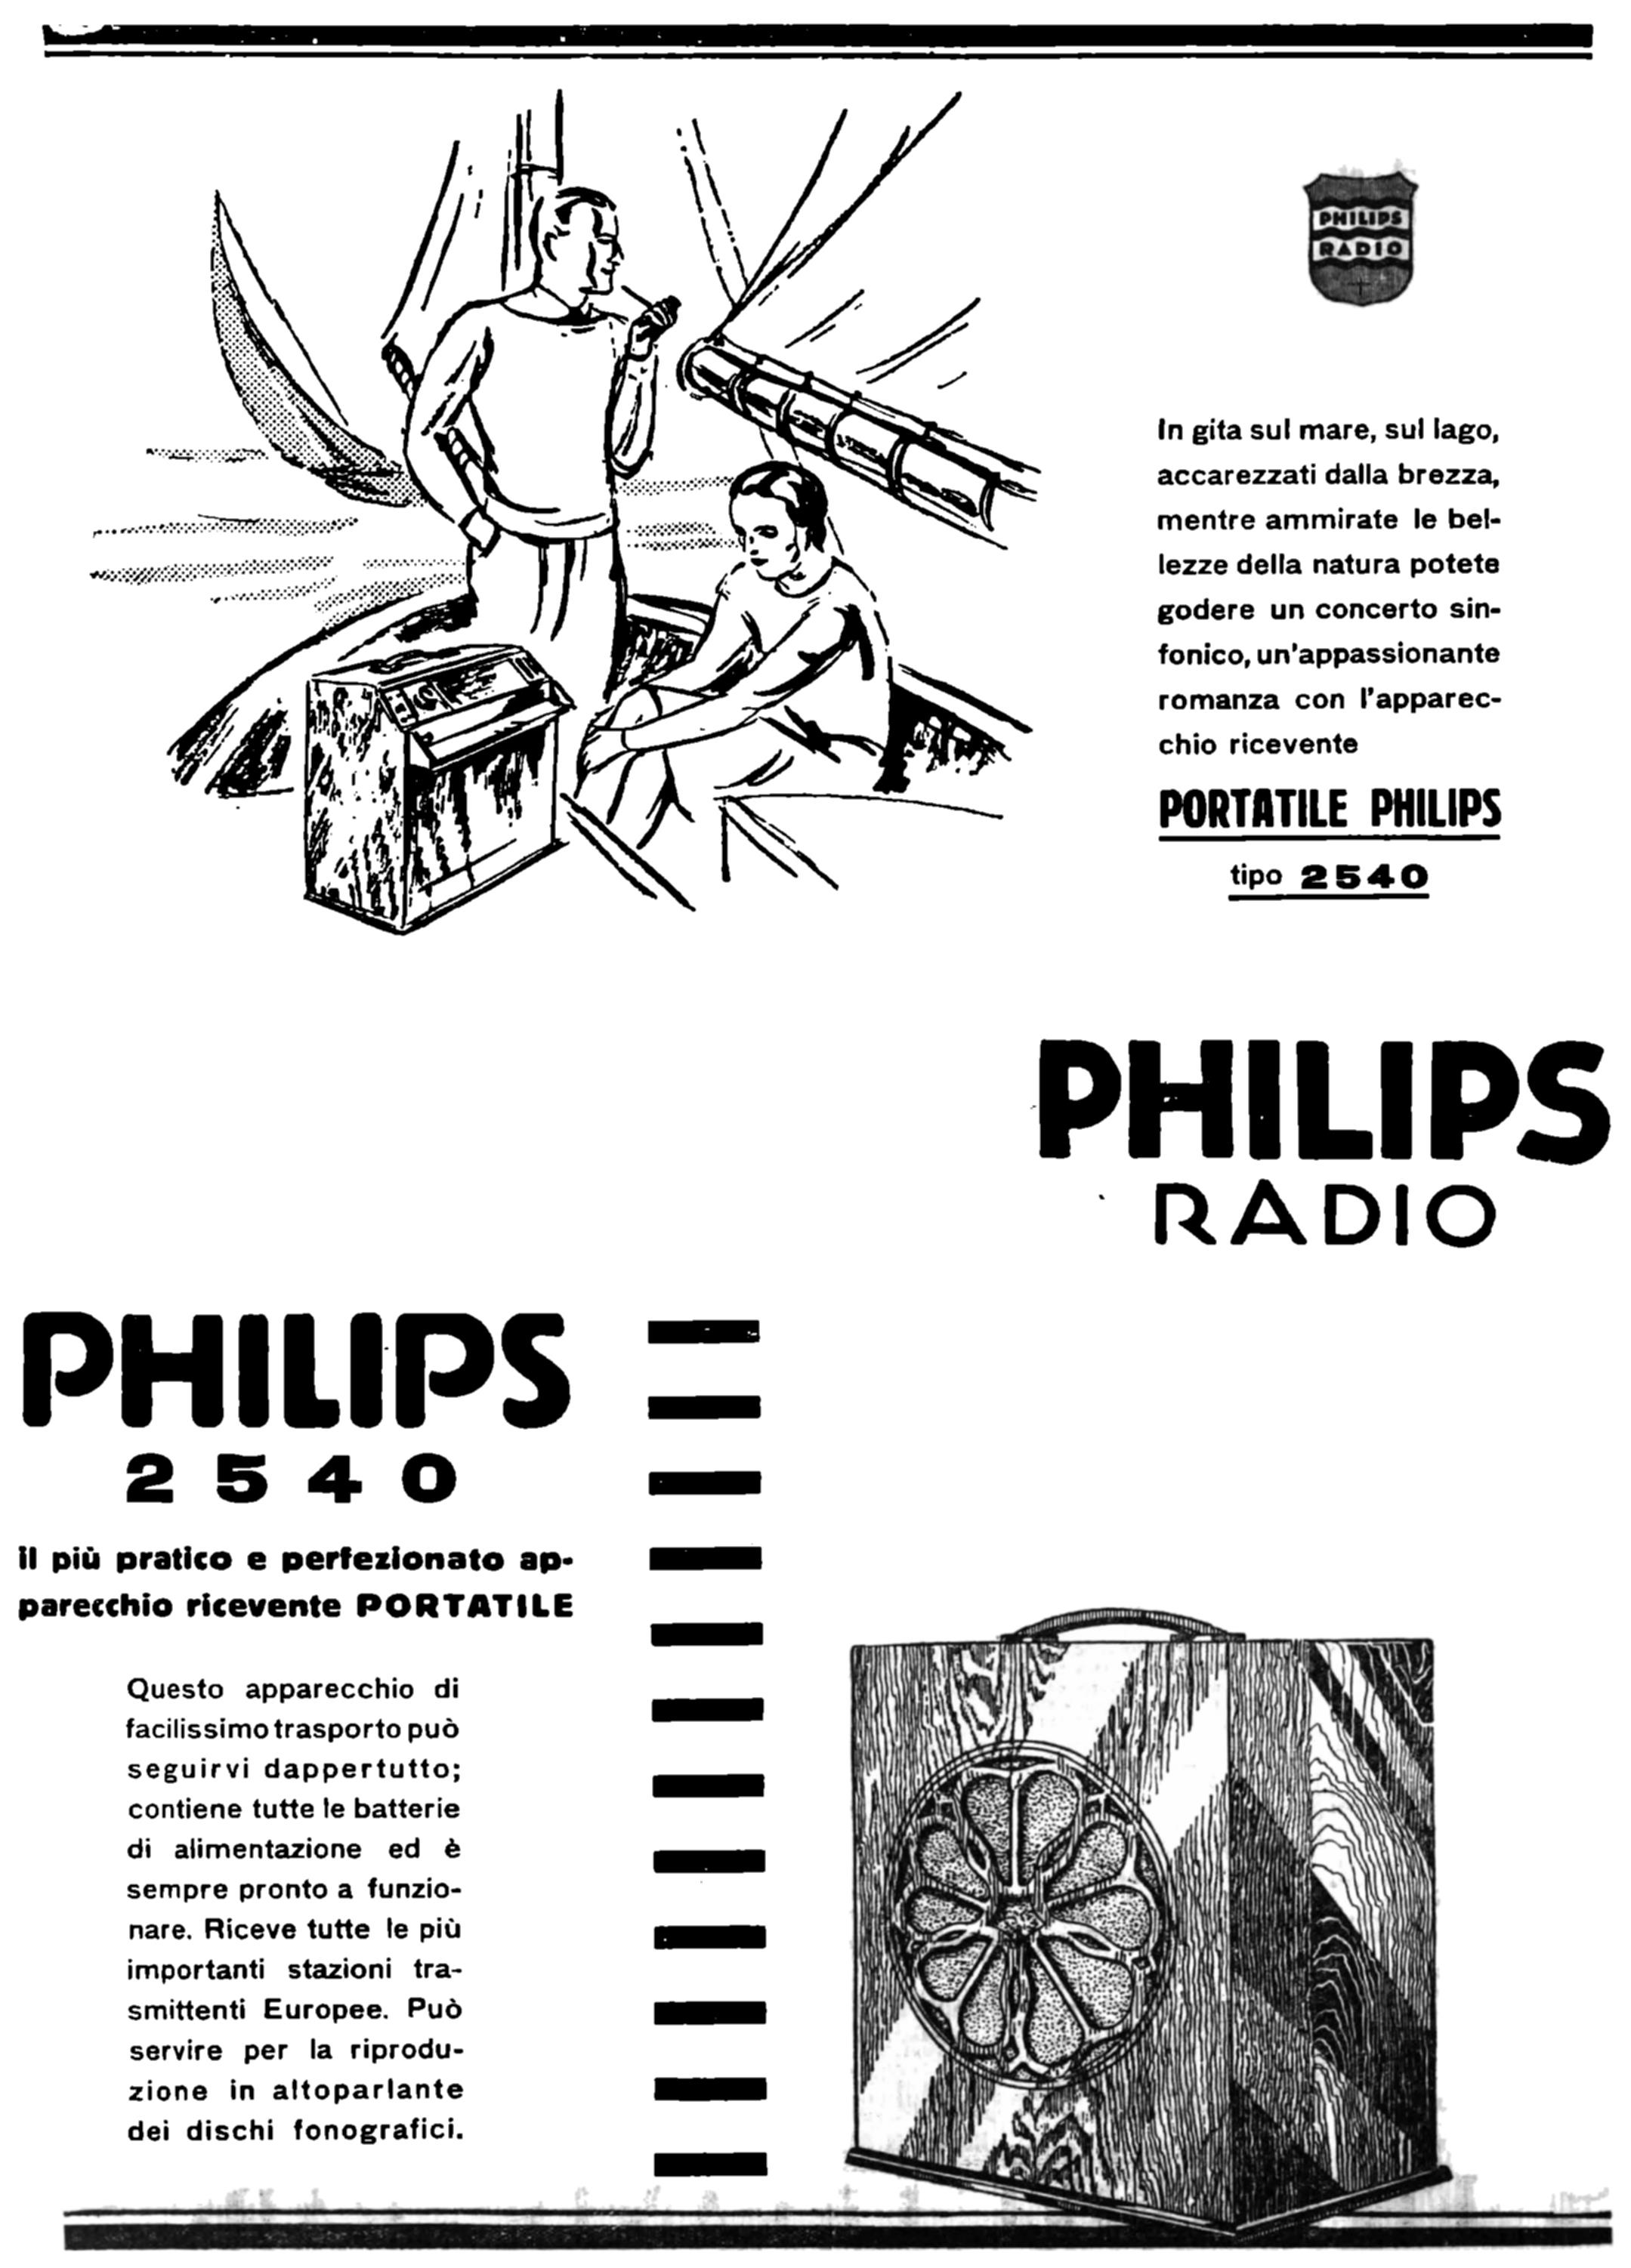 Philips 1930 852.jpg